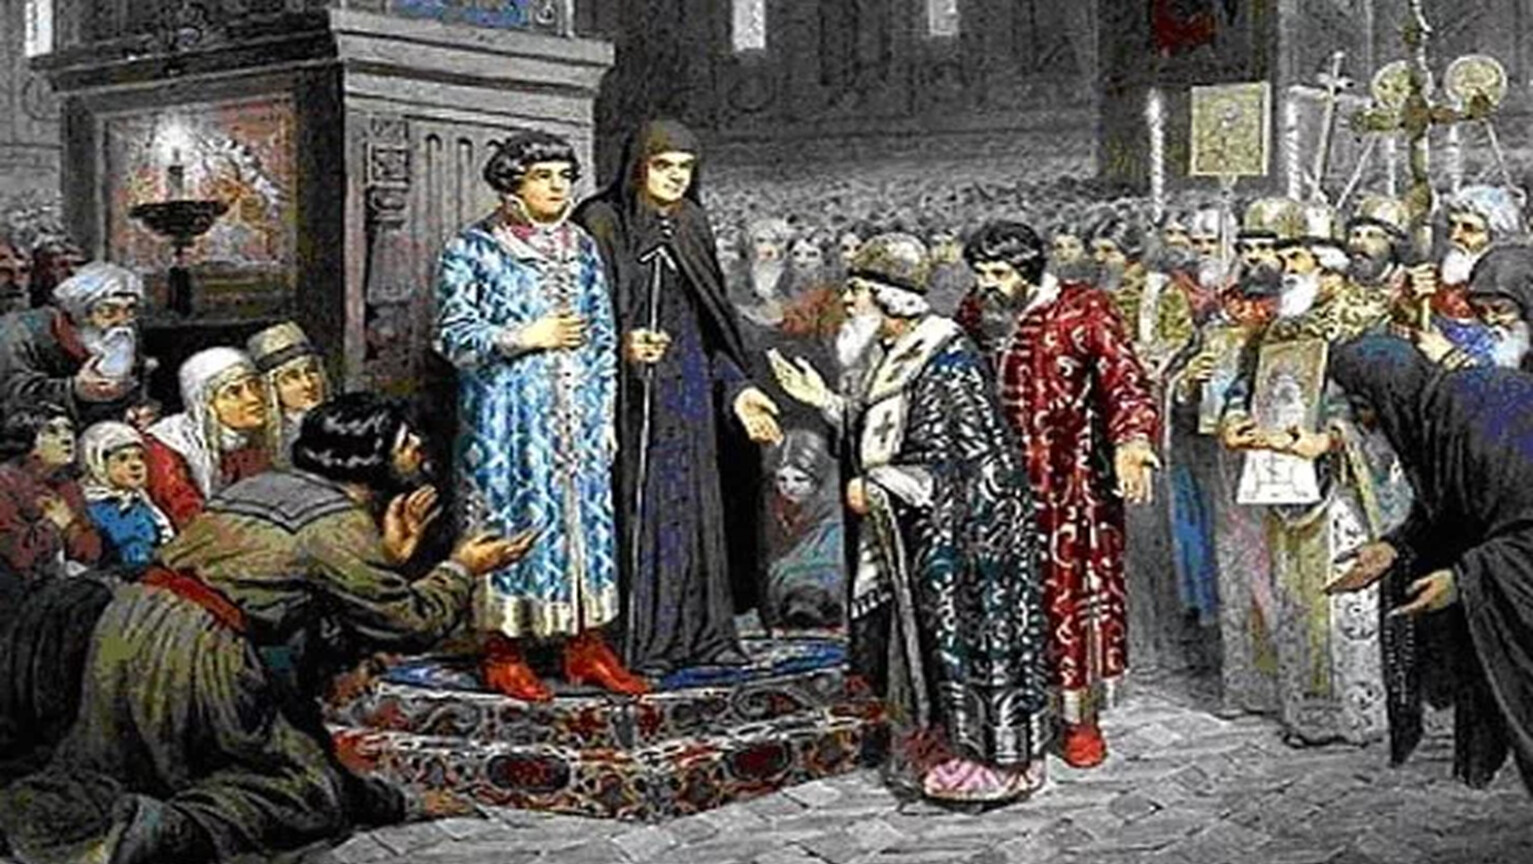 Как было прозвано в народе боярское правительство. Кившенко призвание на царство Романовых.